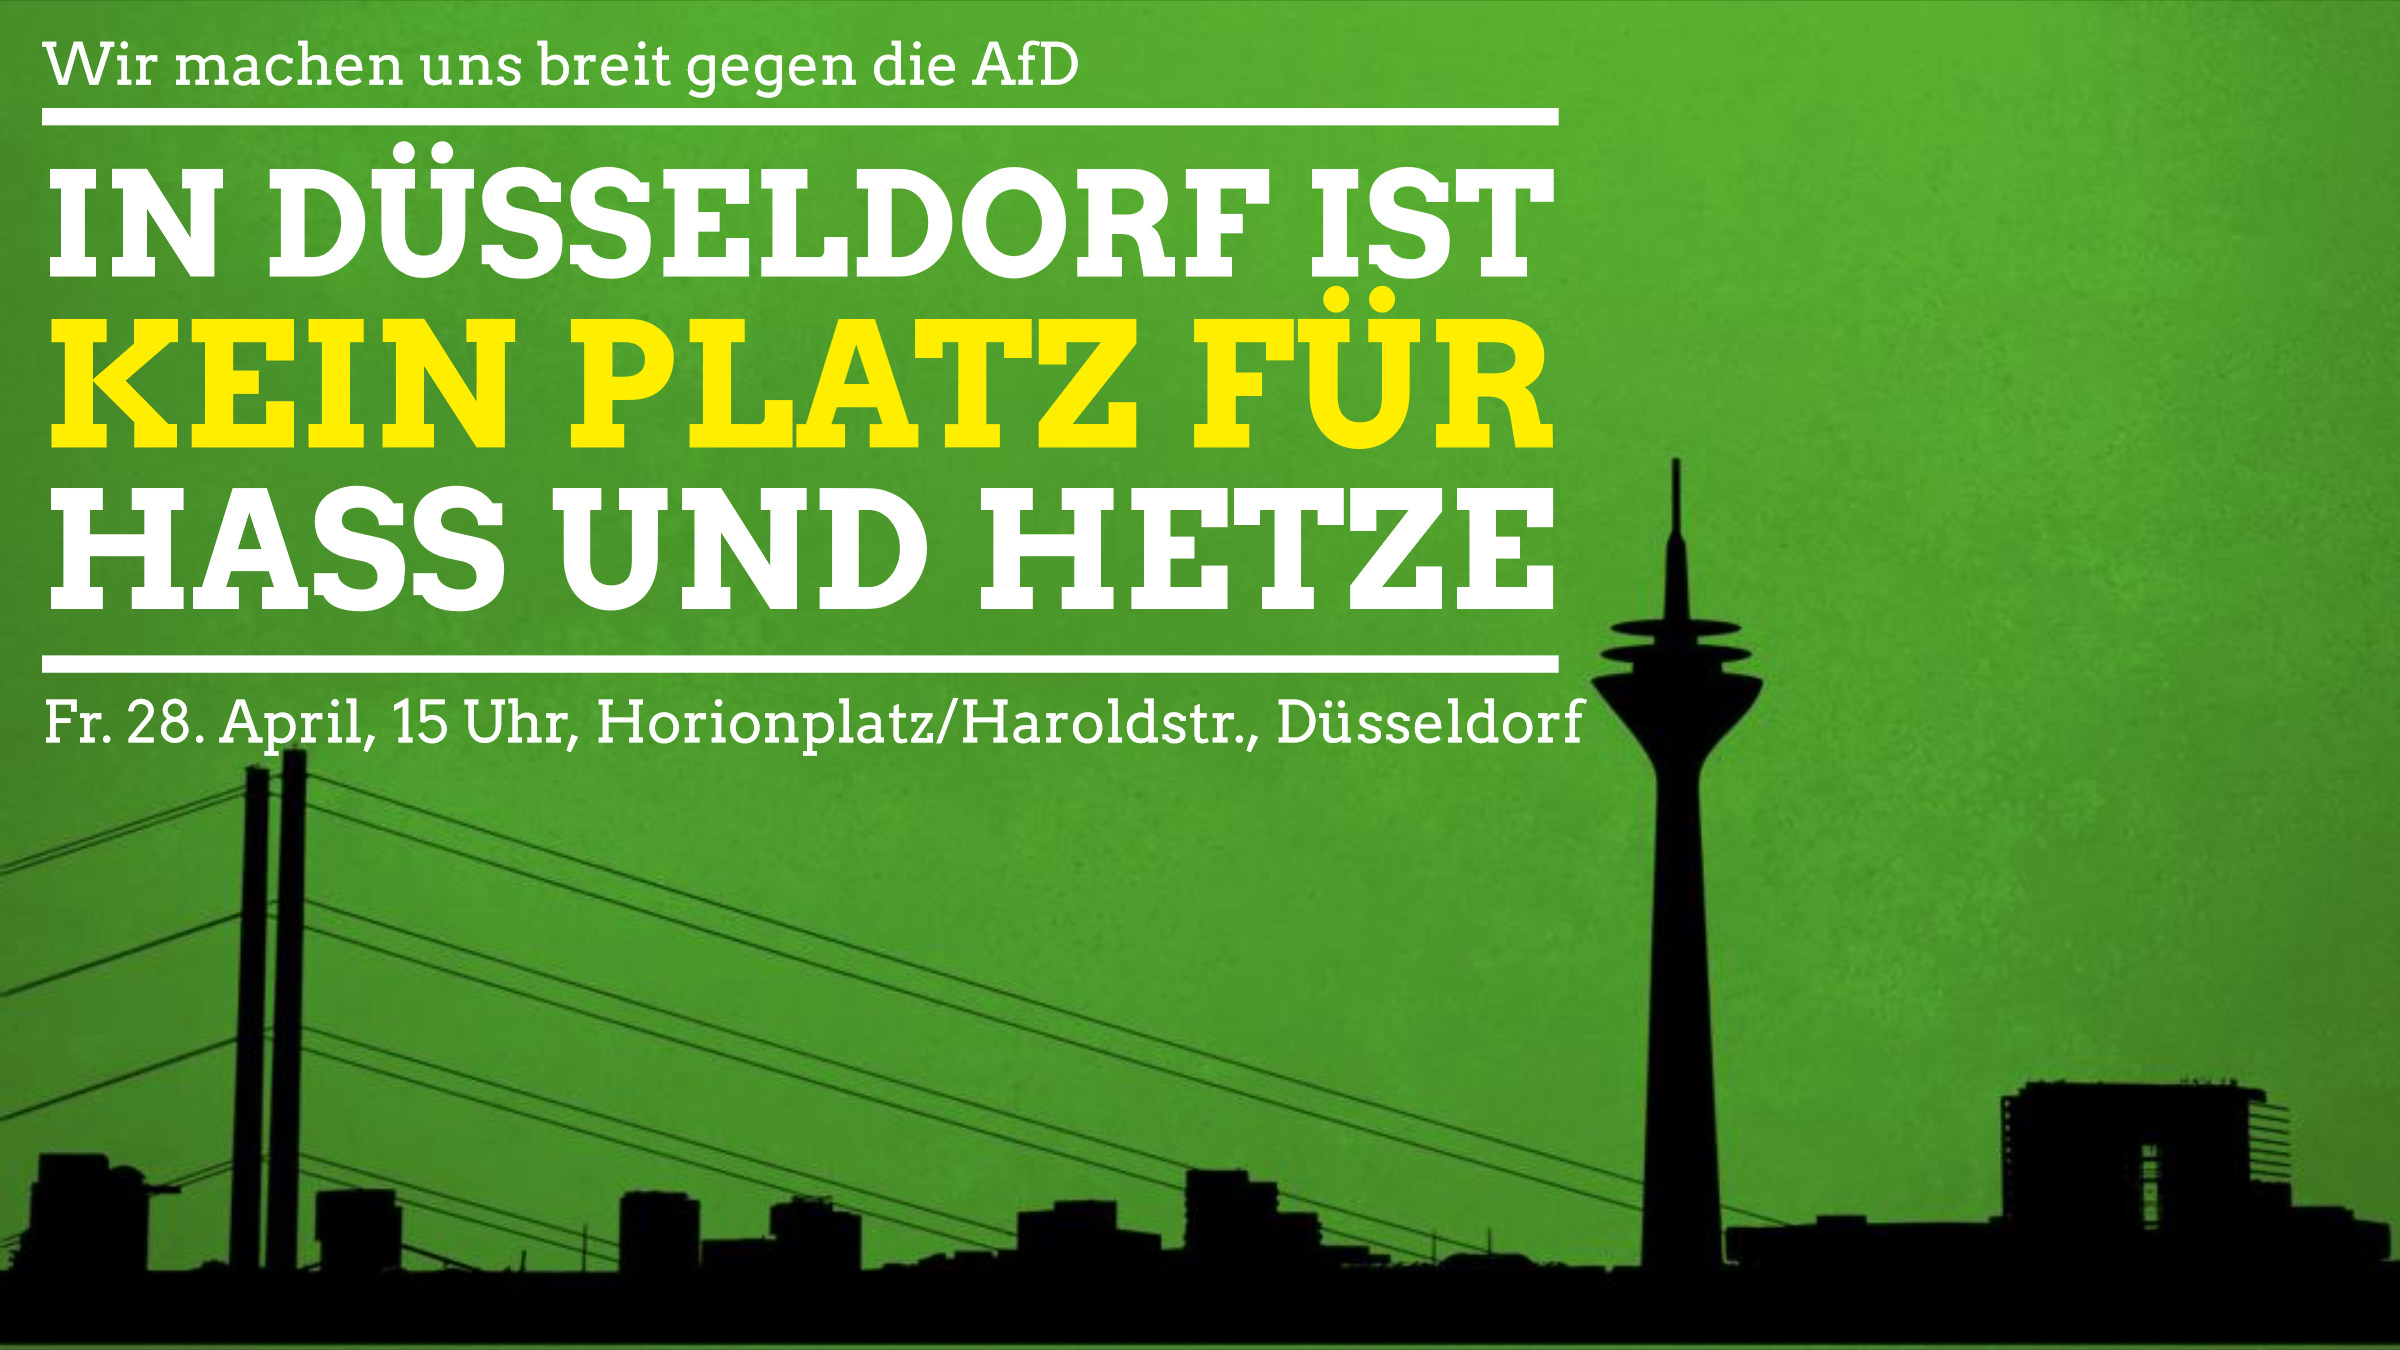 In Düsseldorf ist kein Platz für Hass und Hetze – Kundgebung am Freitag, 28. April